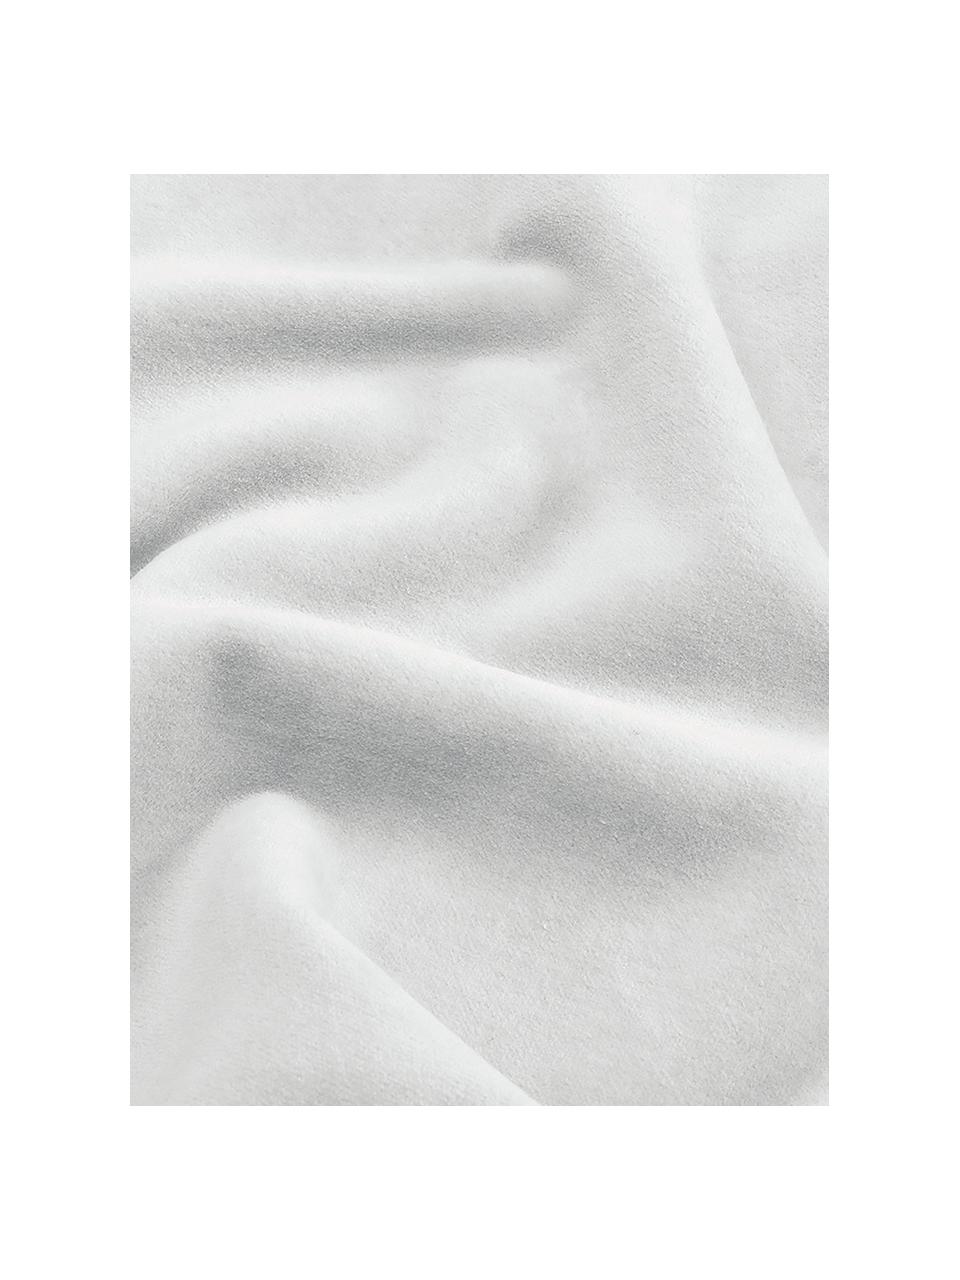 Housse de coussin velours gris clair Dana, 100 % velours de coton, Gris clair, larg. 40 x long. 40 cm